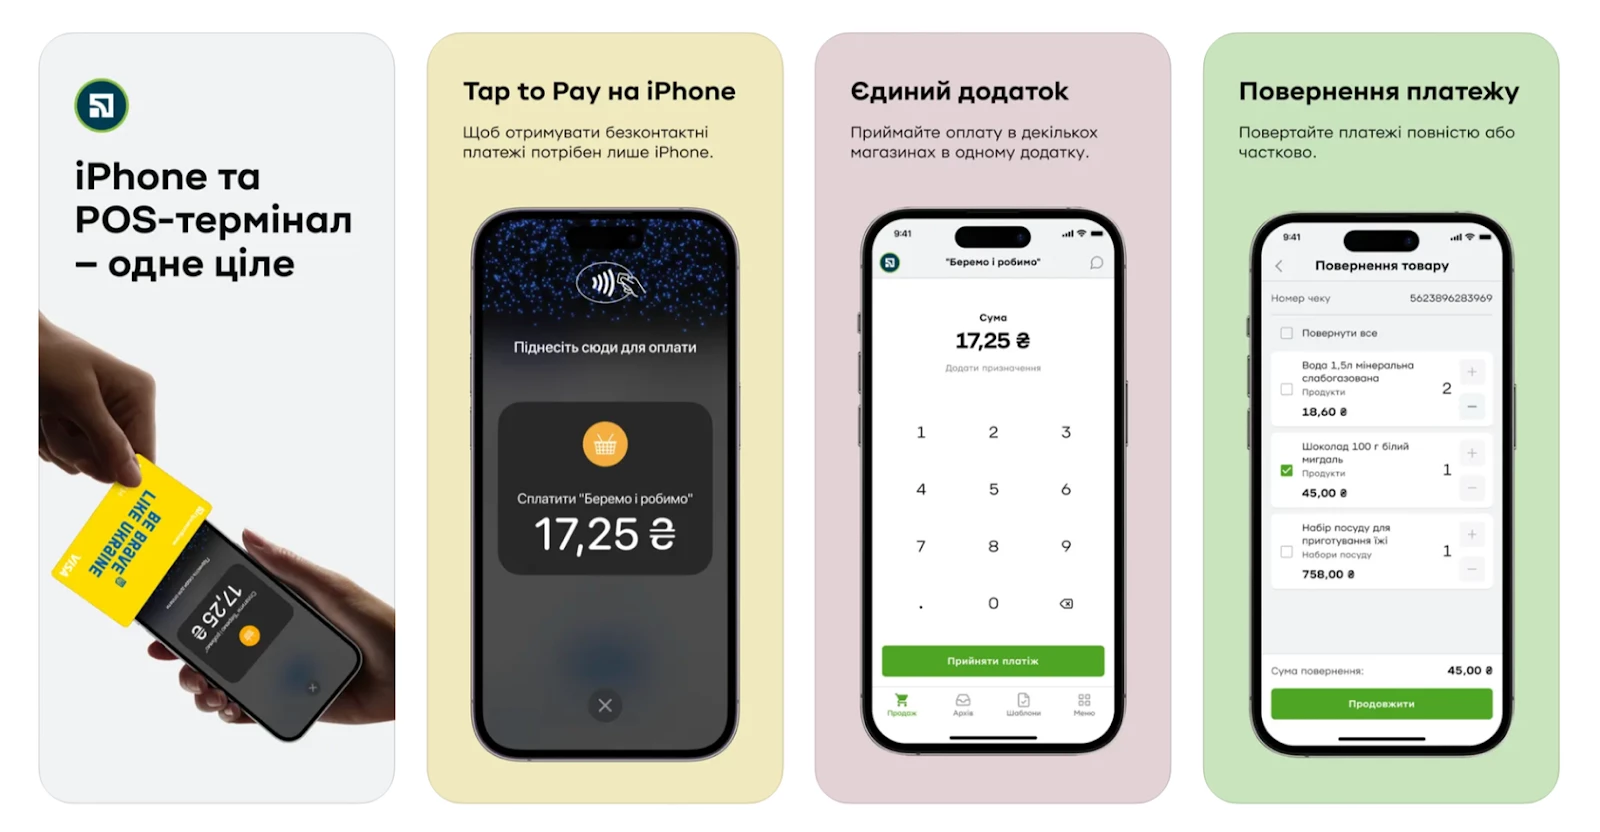 Tap to Pay: новая функция от ПриватБанка, которая превращает iPhone в платежный терминал фото 1